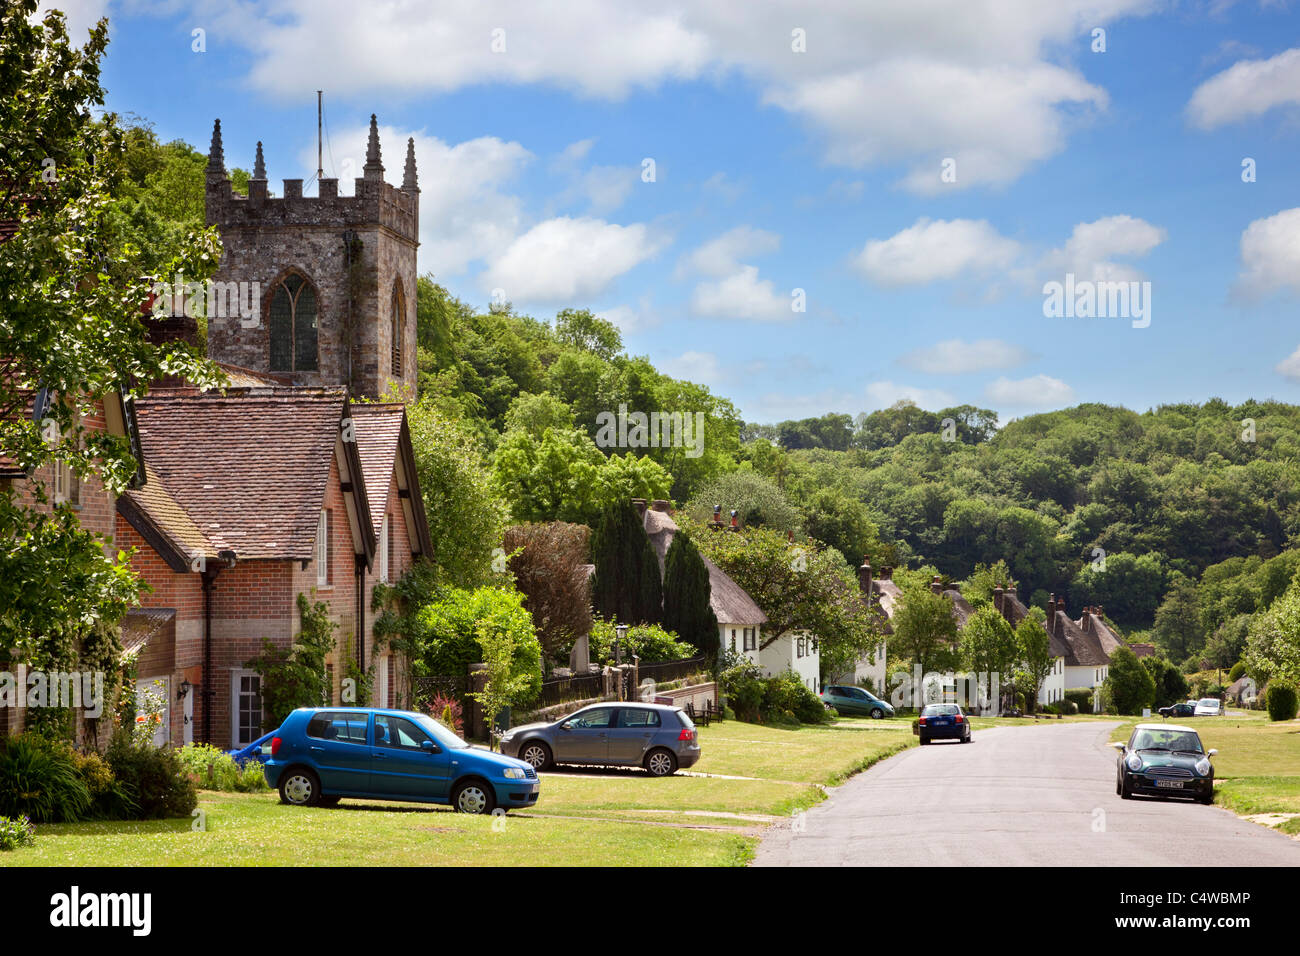 Schöne englische Dorf von Milton Abbas in Dorset, England, Vereinigtes Königreich mit strohgedeckten Hütten und alte britische Dorfkirche Stockfoto